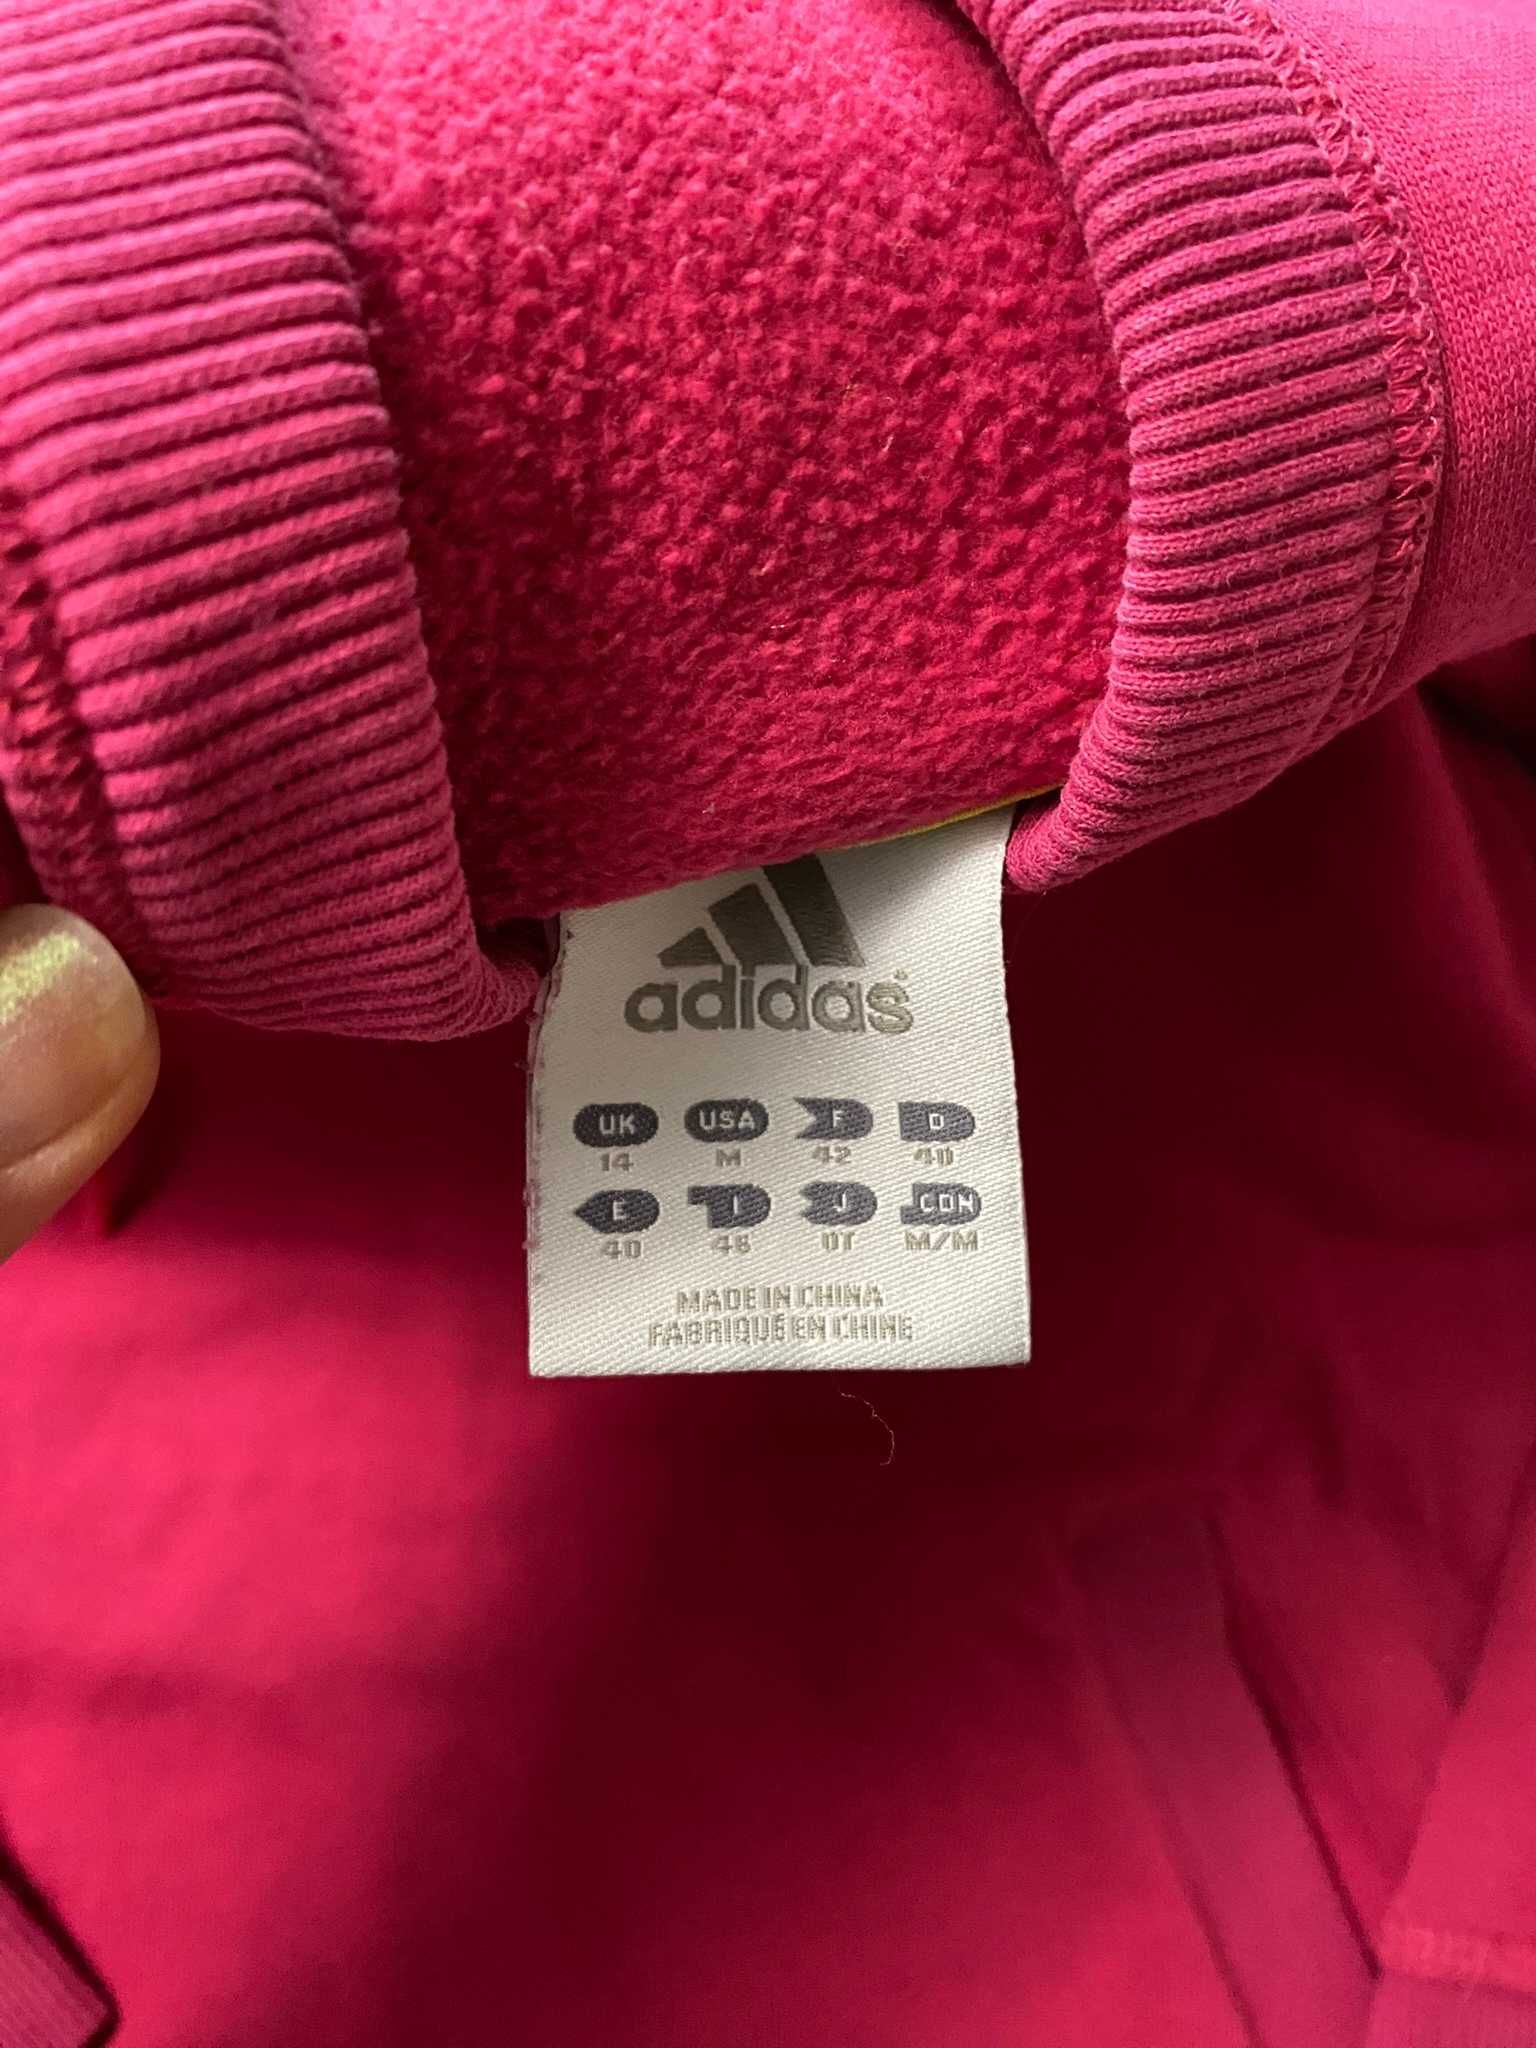 Bluza z kapturem adidas różowa S M z napisem kieszonką ciepła na lato